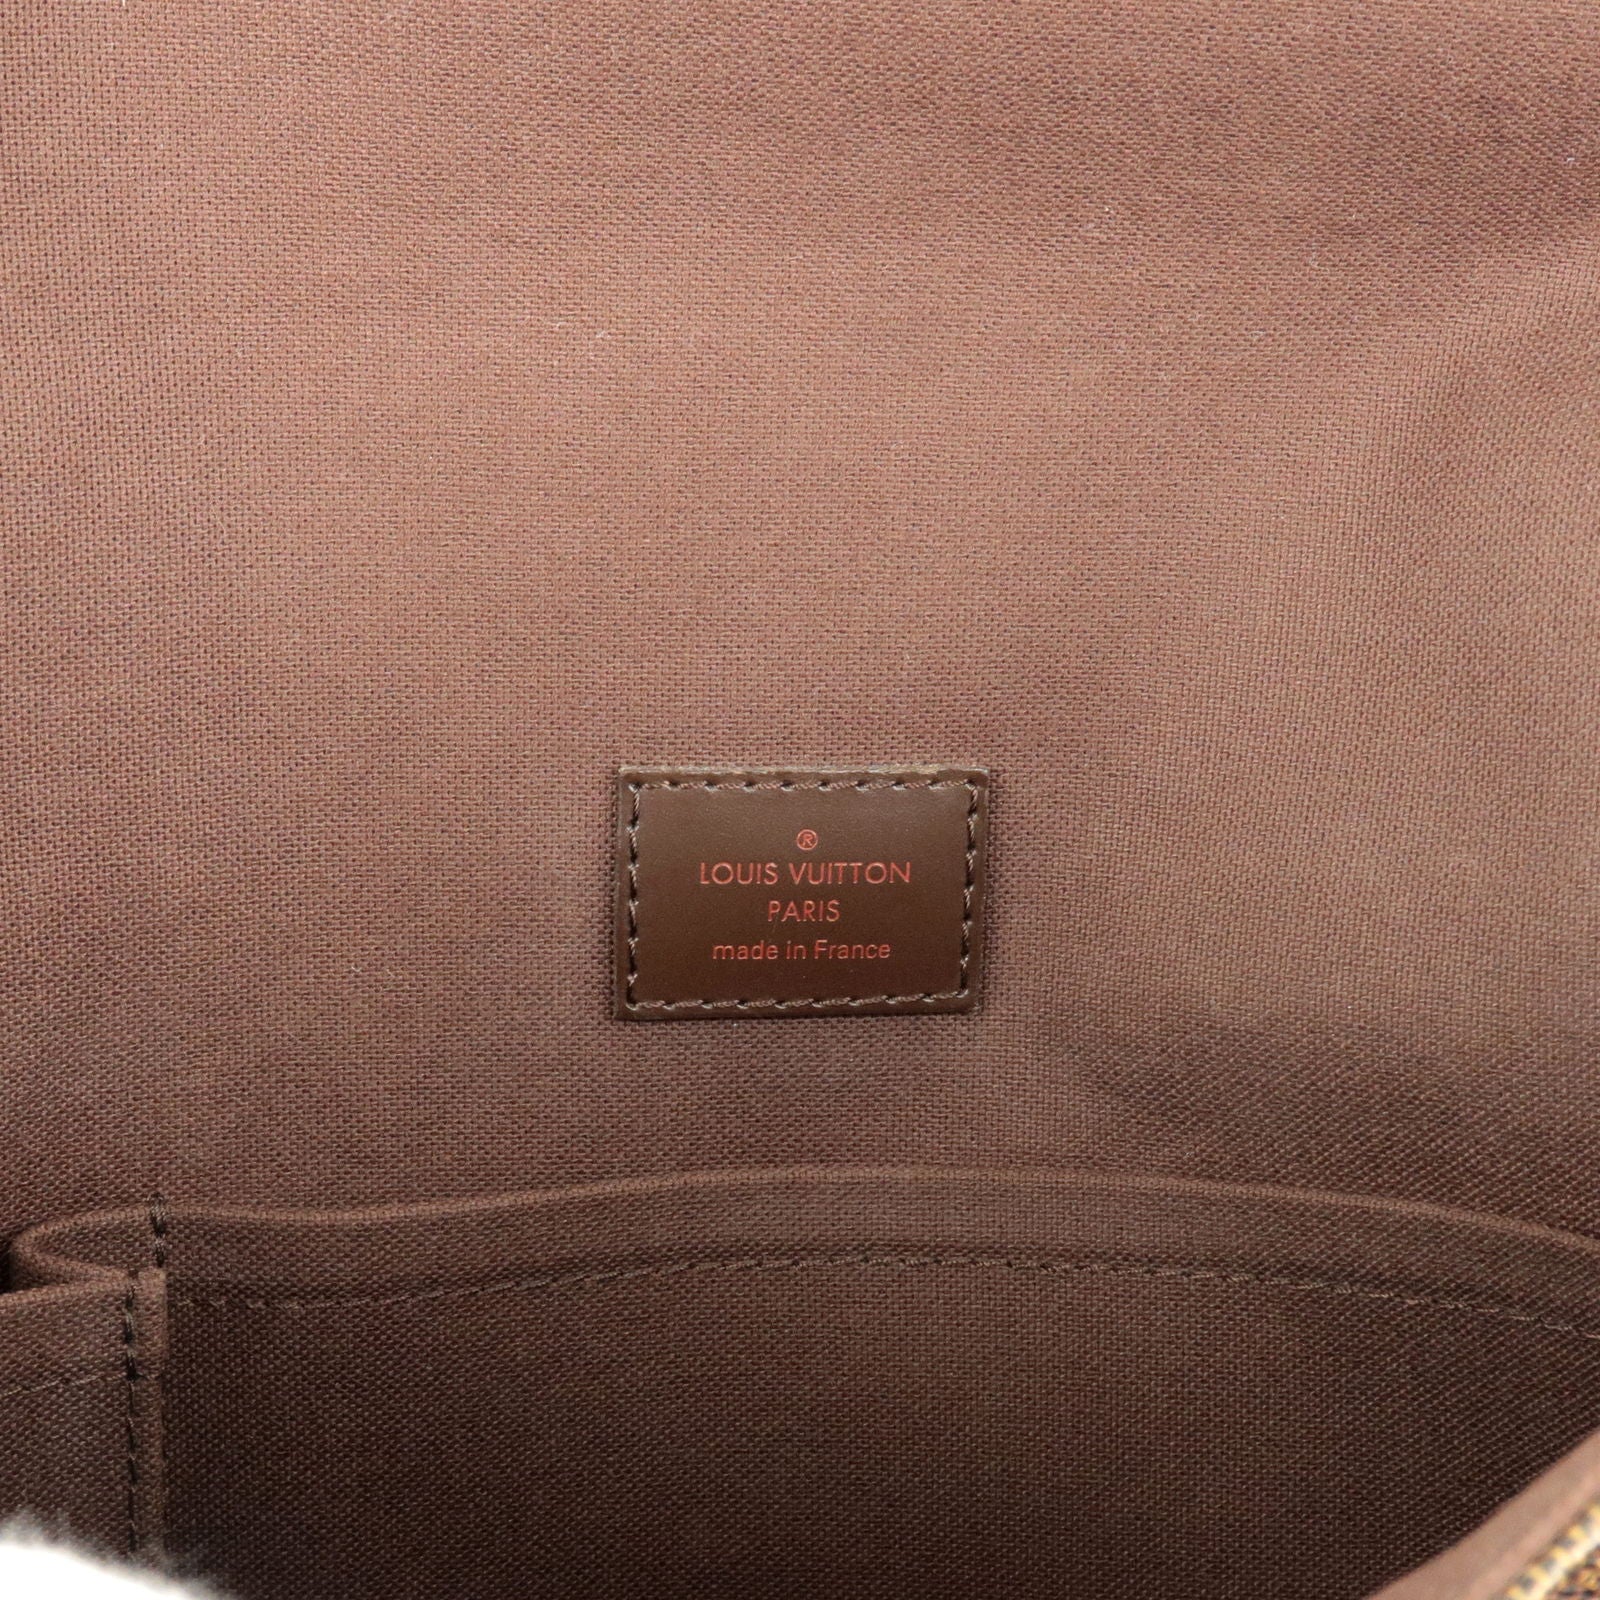 LOUIS VUITTON Damier Brooklyn MM shoulder bag messenger bag Used From Japan